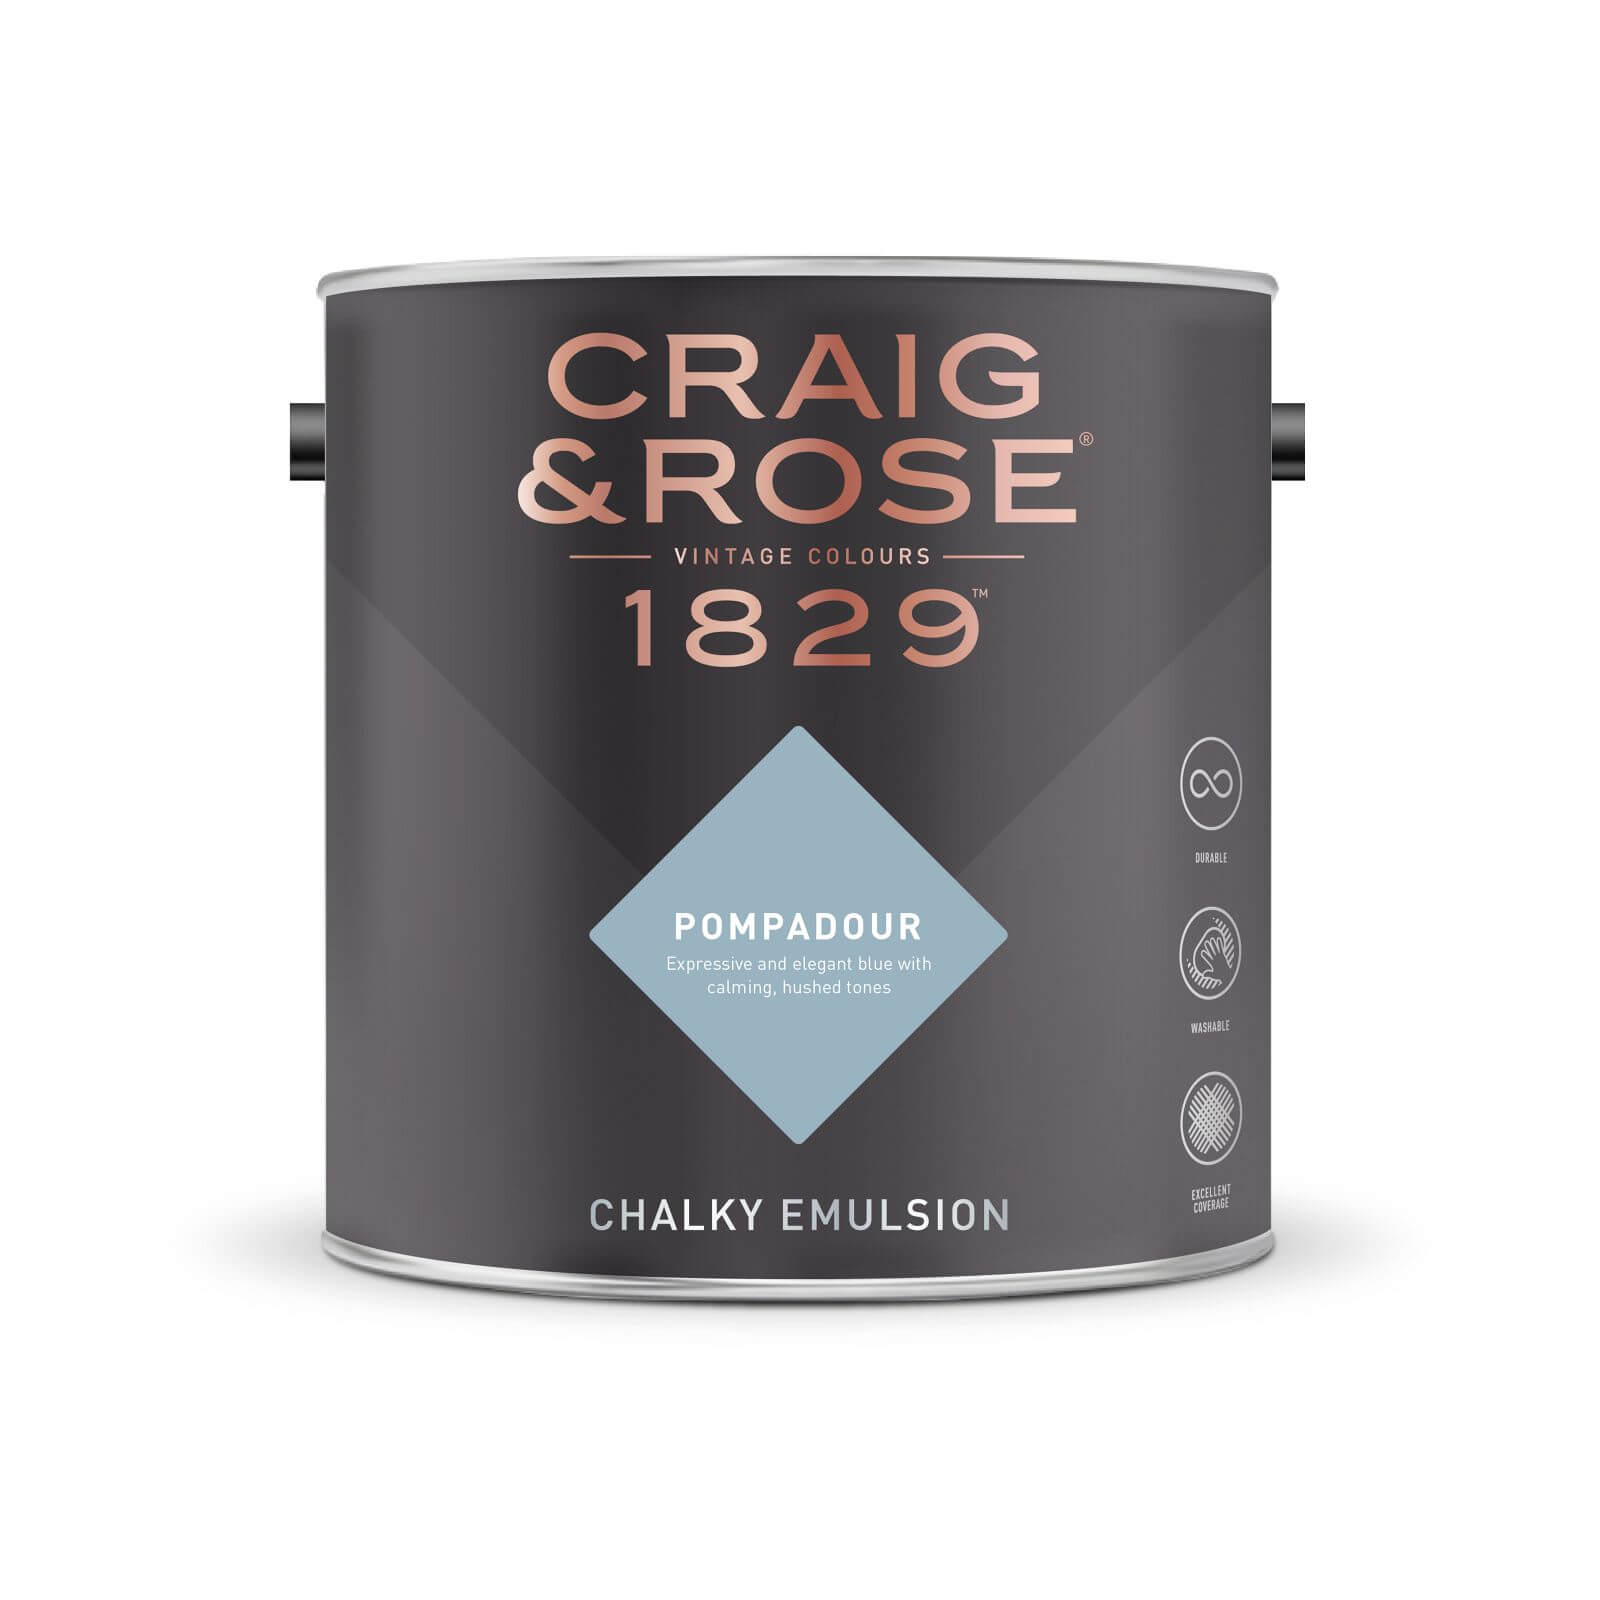 Craig & Rose 1829 Chalky Emulsion Paint Pompadour - 5L